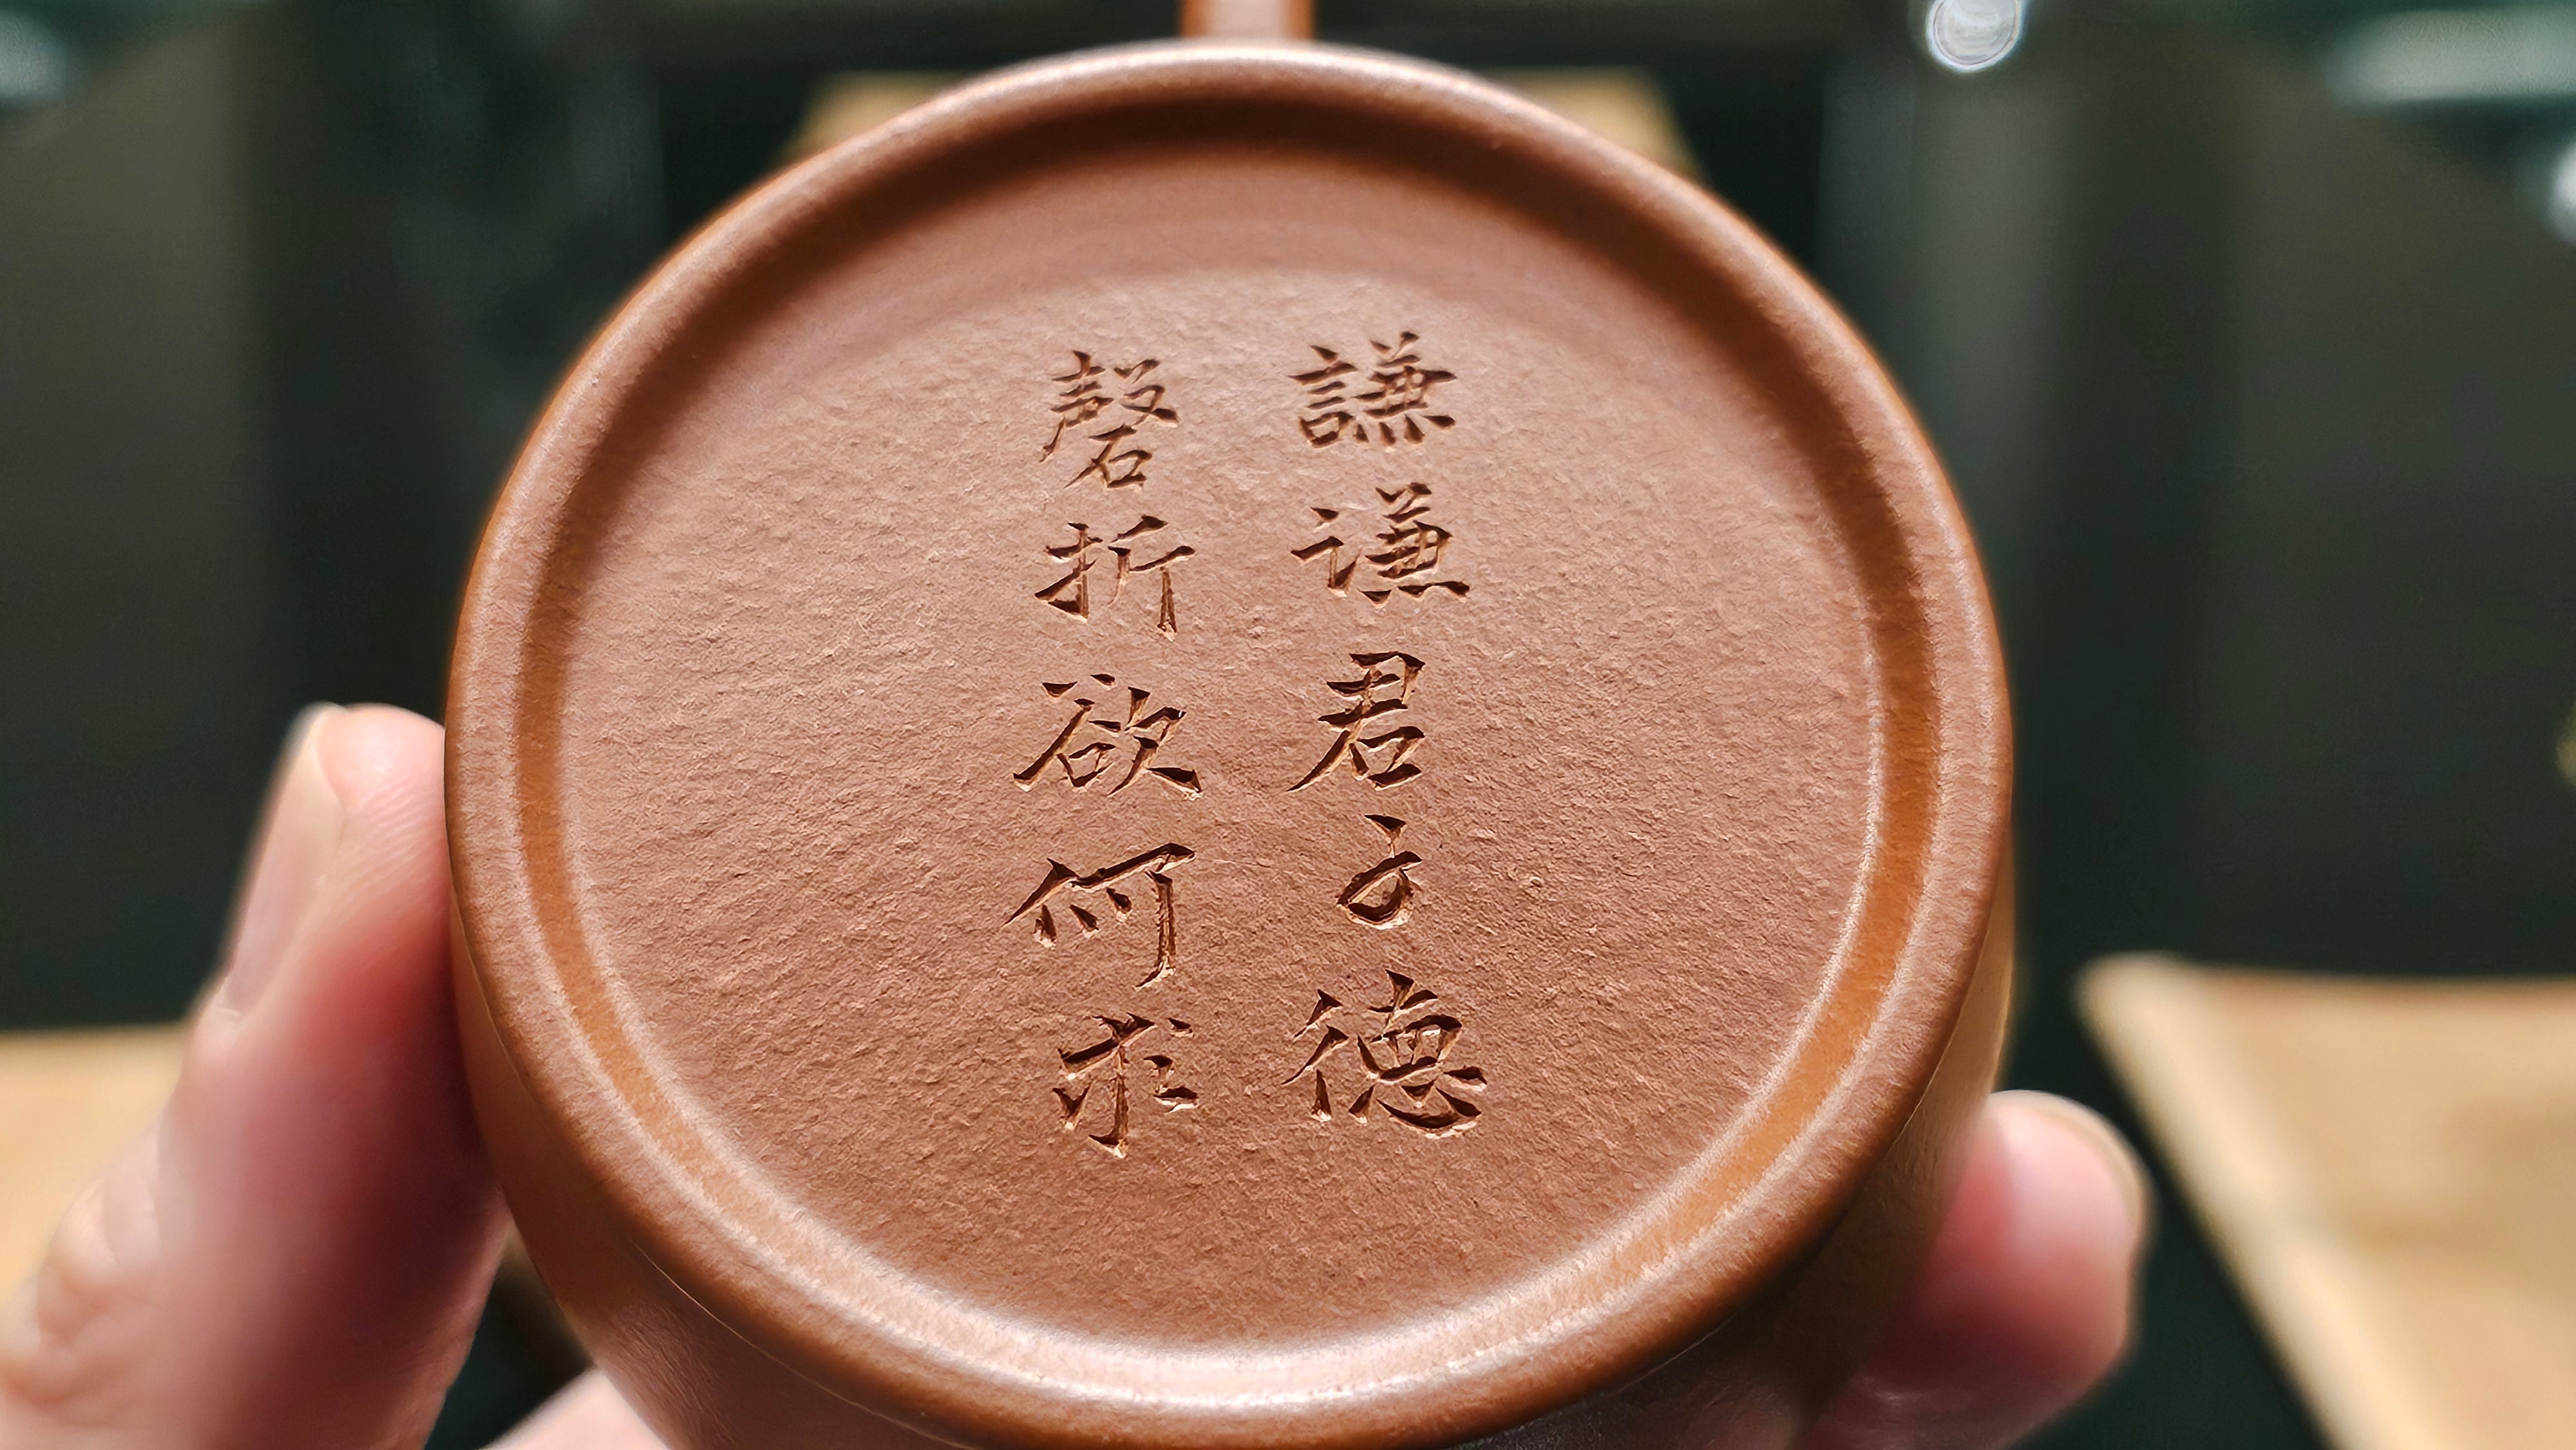 Qin He 琴鹤, 116ml, Gu Fa Lian Ni (Most Archaic Clay Forming) ~ Zhao Zhuang Zhu Ni *古法练泥~赵庄朱泥, L4 Assoc Master Du Cheng Yao 堵程尧